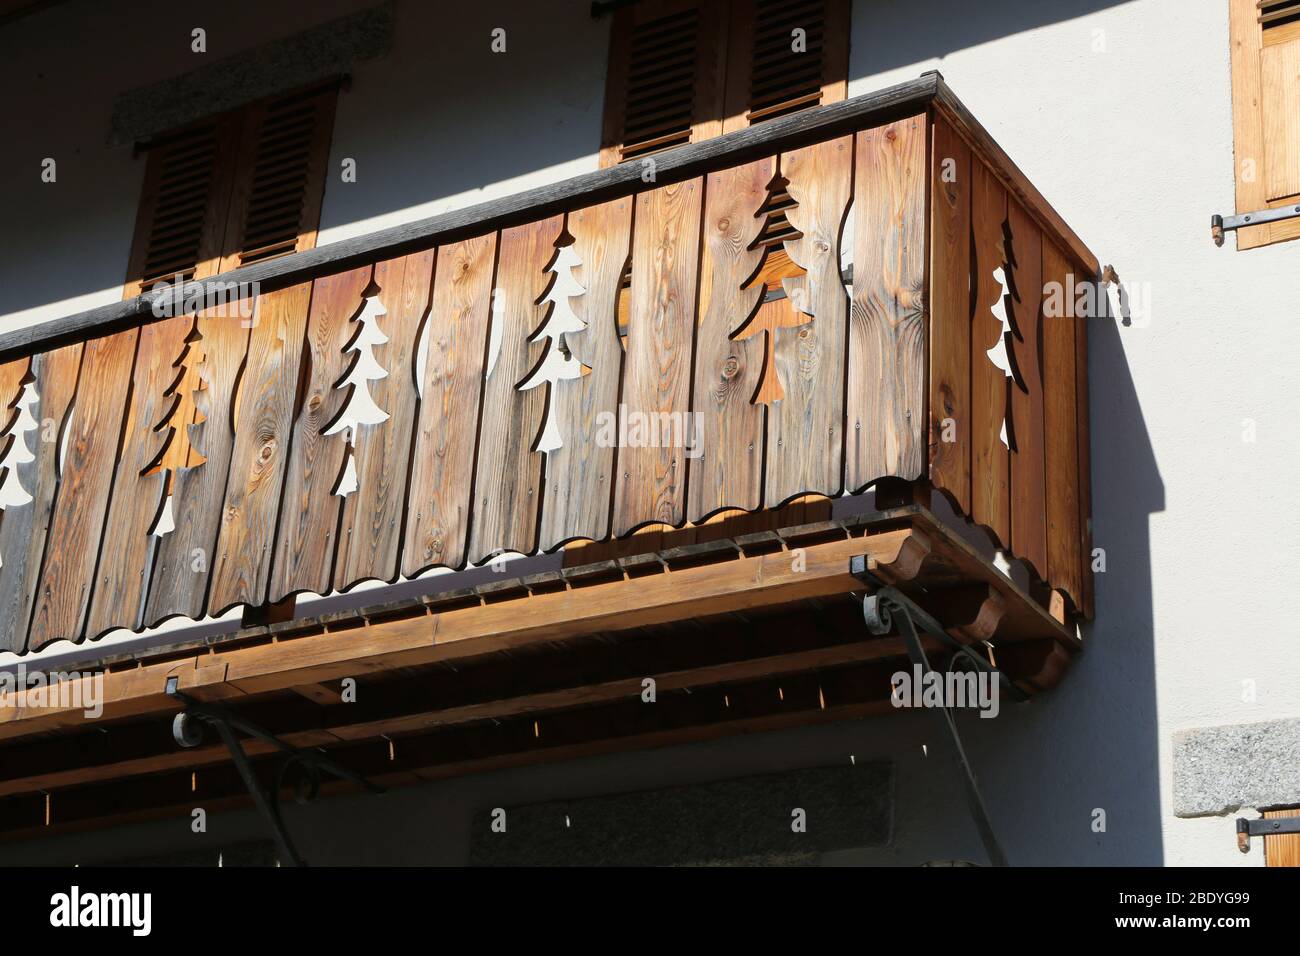 Balcon en bois avec des motifs en form de sapin. Maison savoyarde. Saint-Gervais-les-Bains. Alta Saboya. Francia. Foto de stock